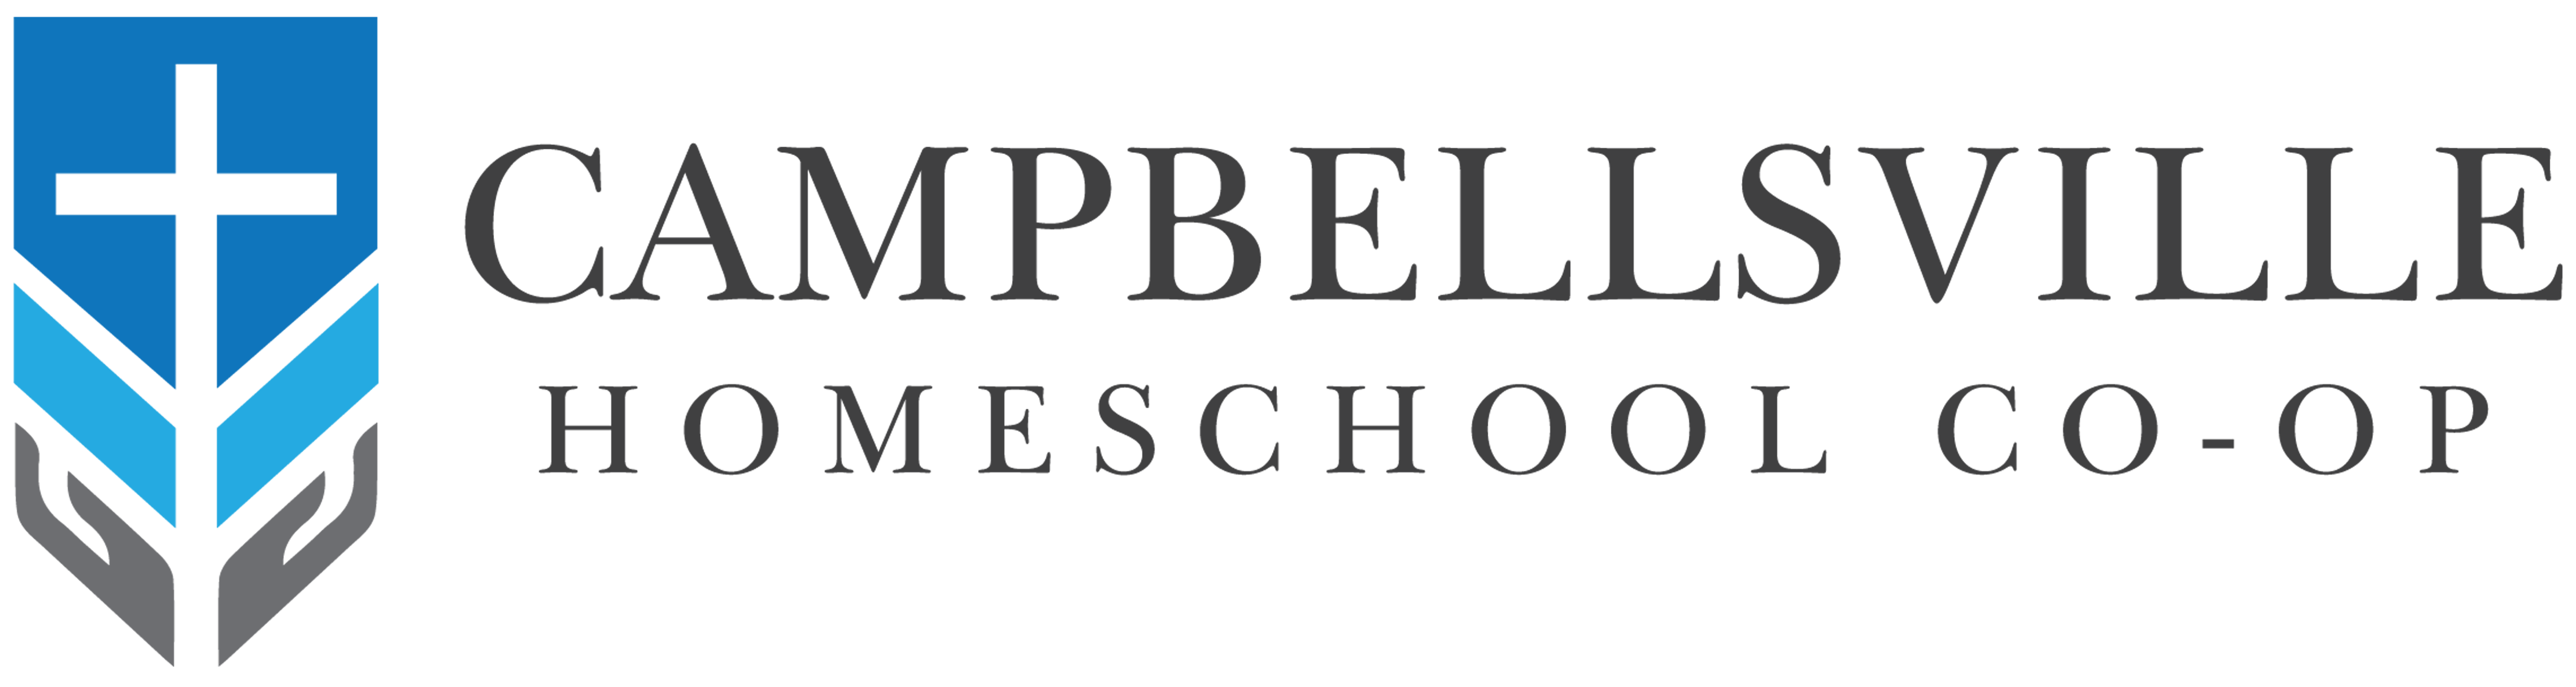 campbellsville-homeschool-co-op